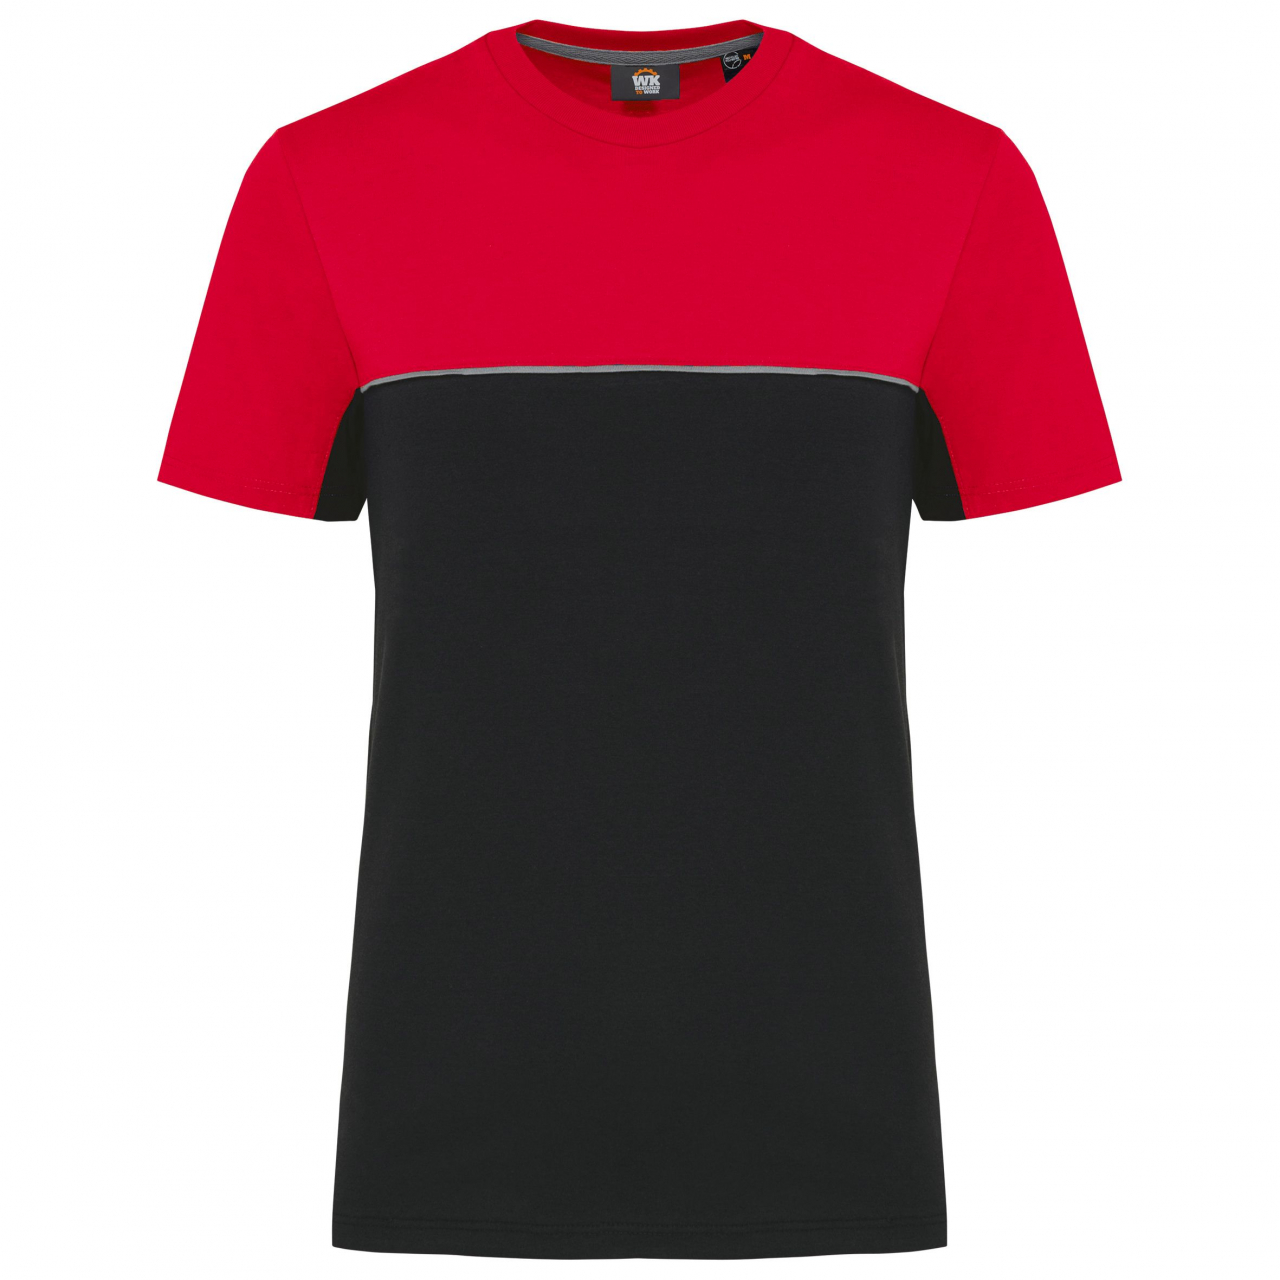 Pracovní triko dvoubarevné WK - černé-červené, XL